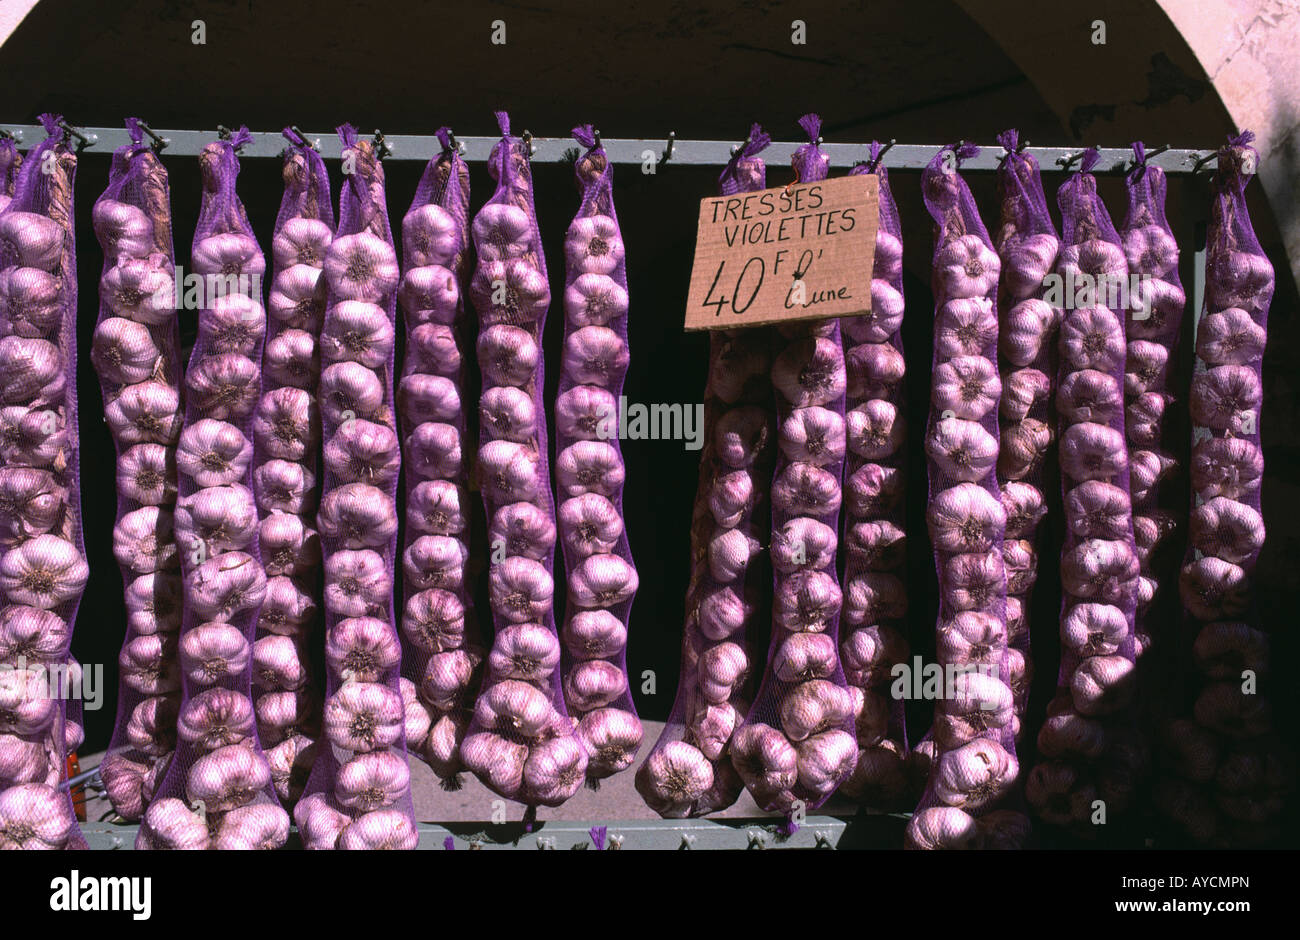 L'ail violet à vendre dans un marché Français Drome France Banque D'Images